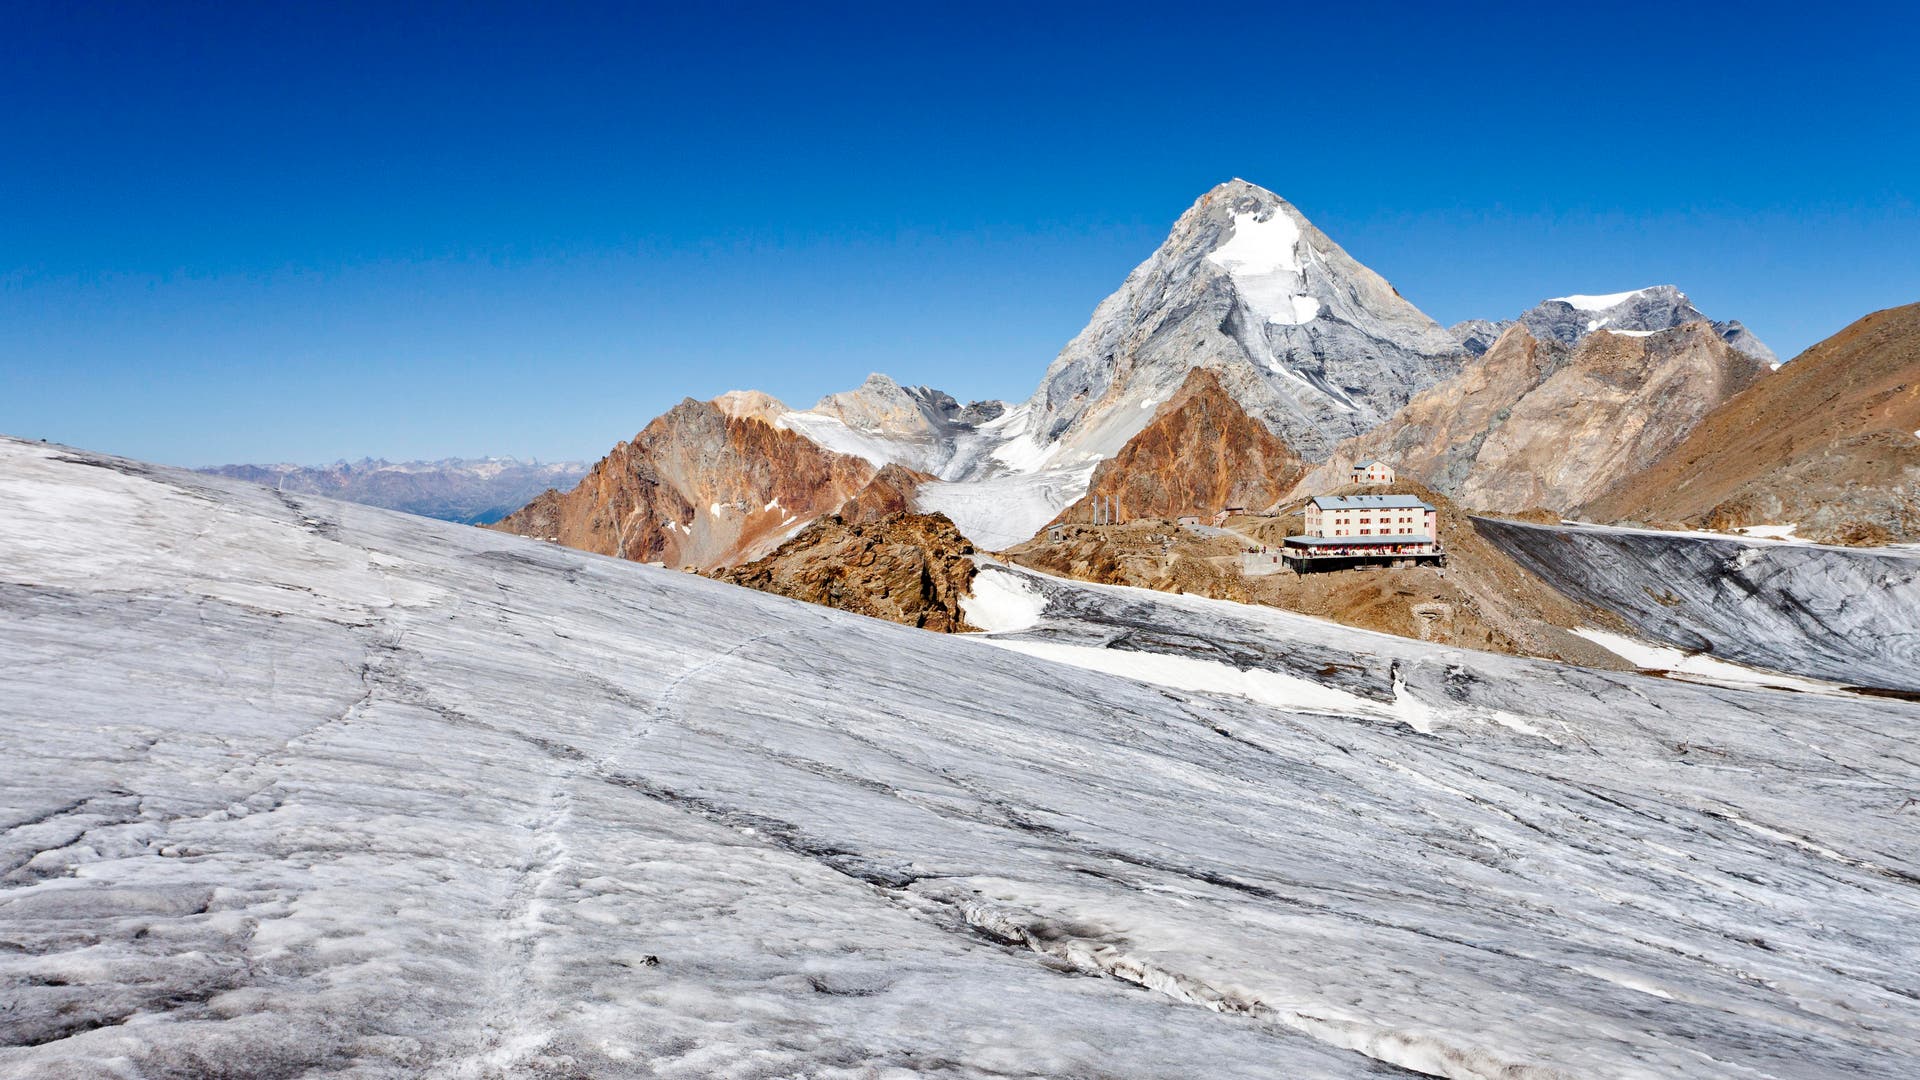 Het smelten van permafrost in de Alpen vergroot het risico op instortende berghutten